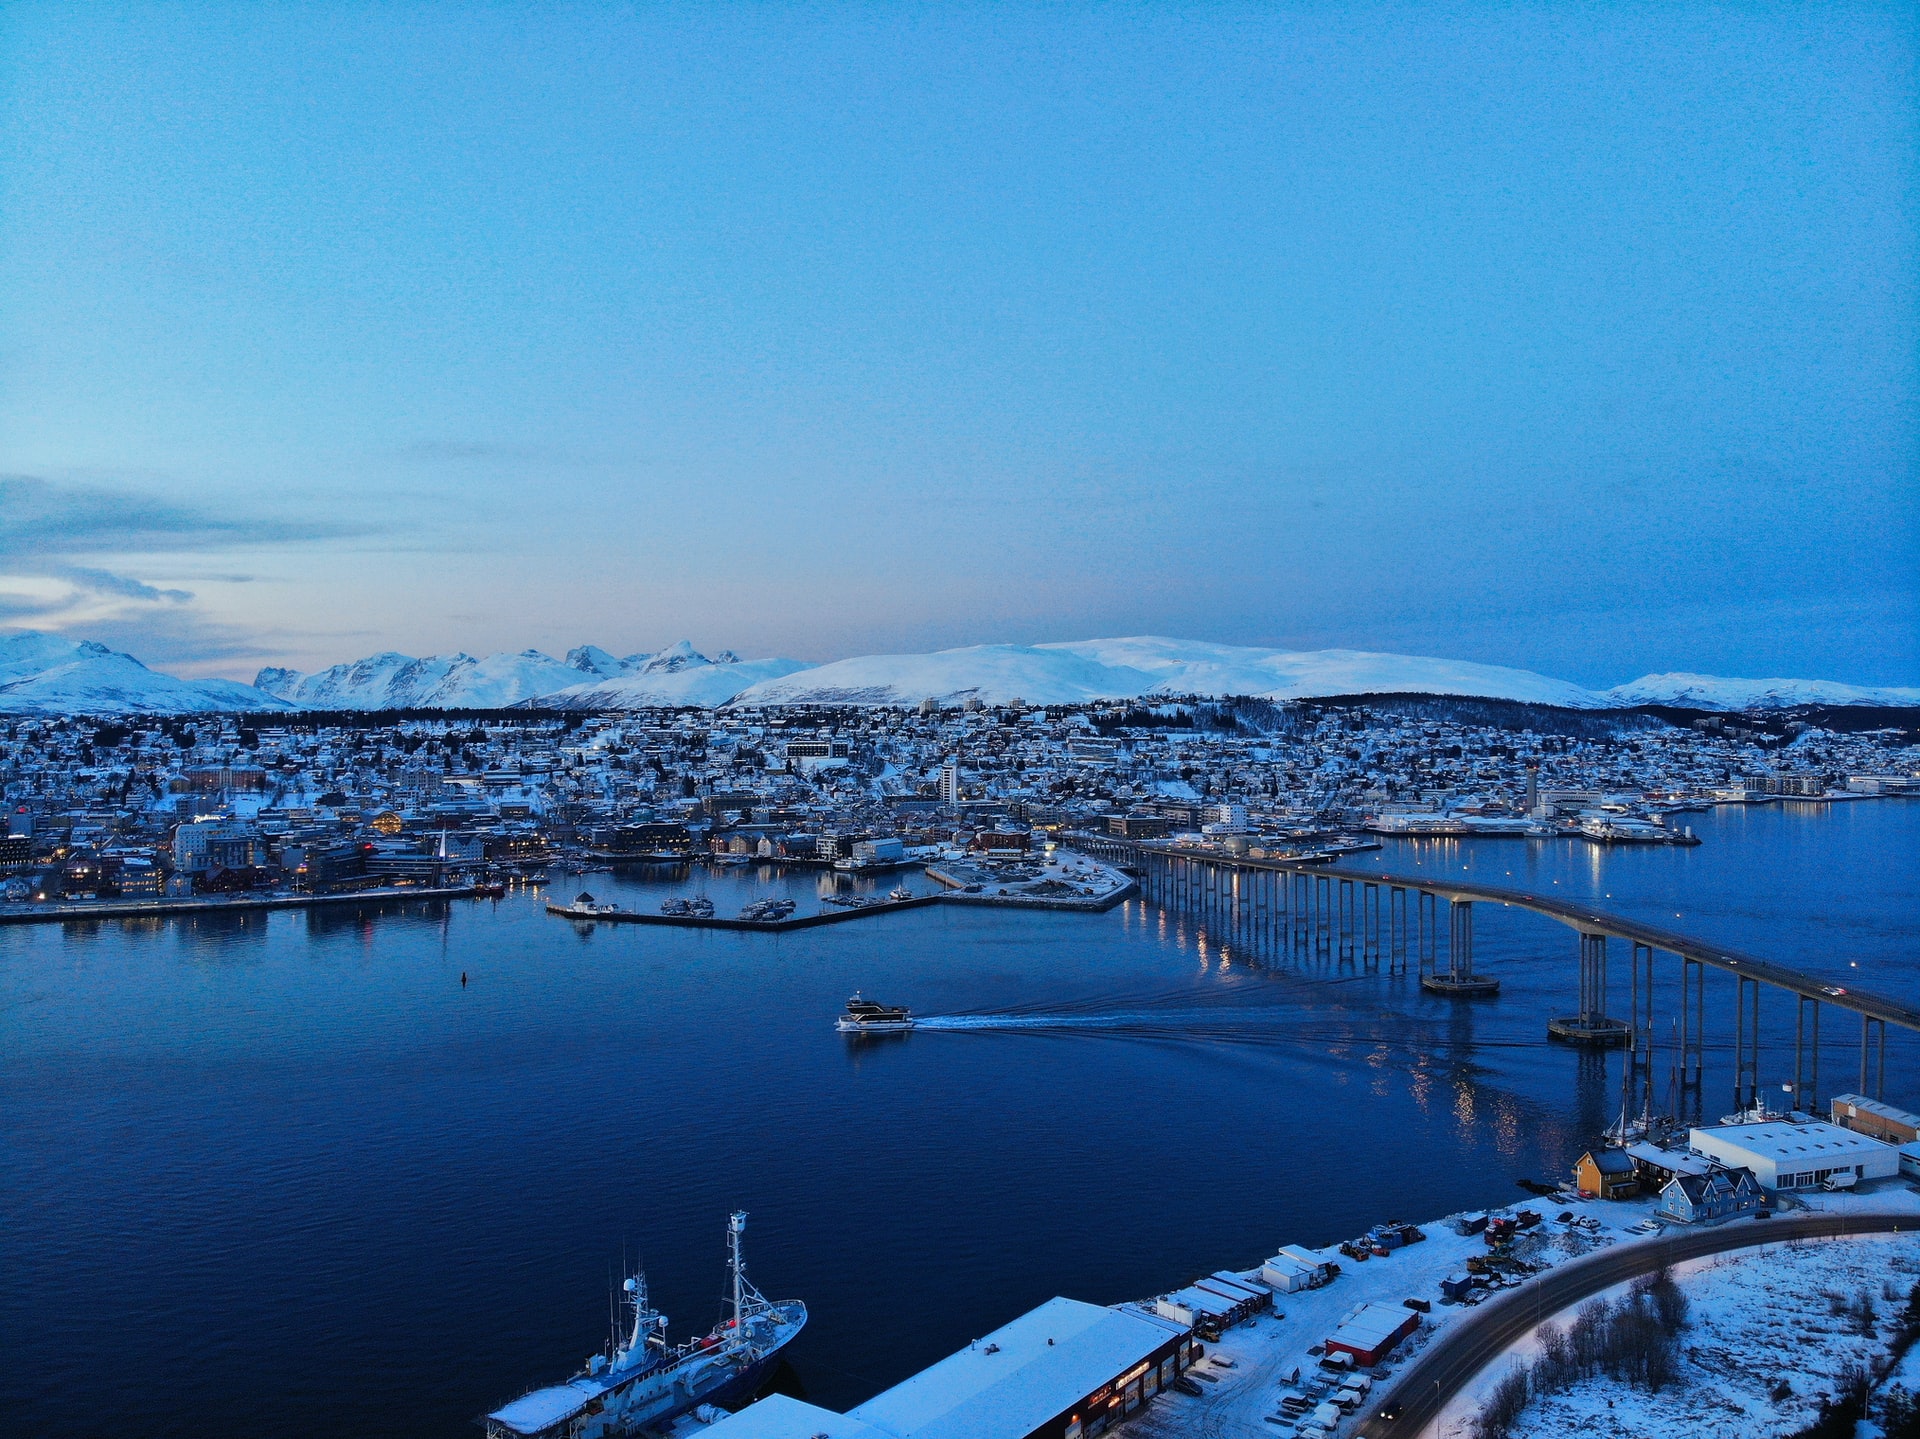 Арктика сегодня: определены приоритеты Совета Баренцева / Евроарктического региона